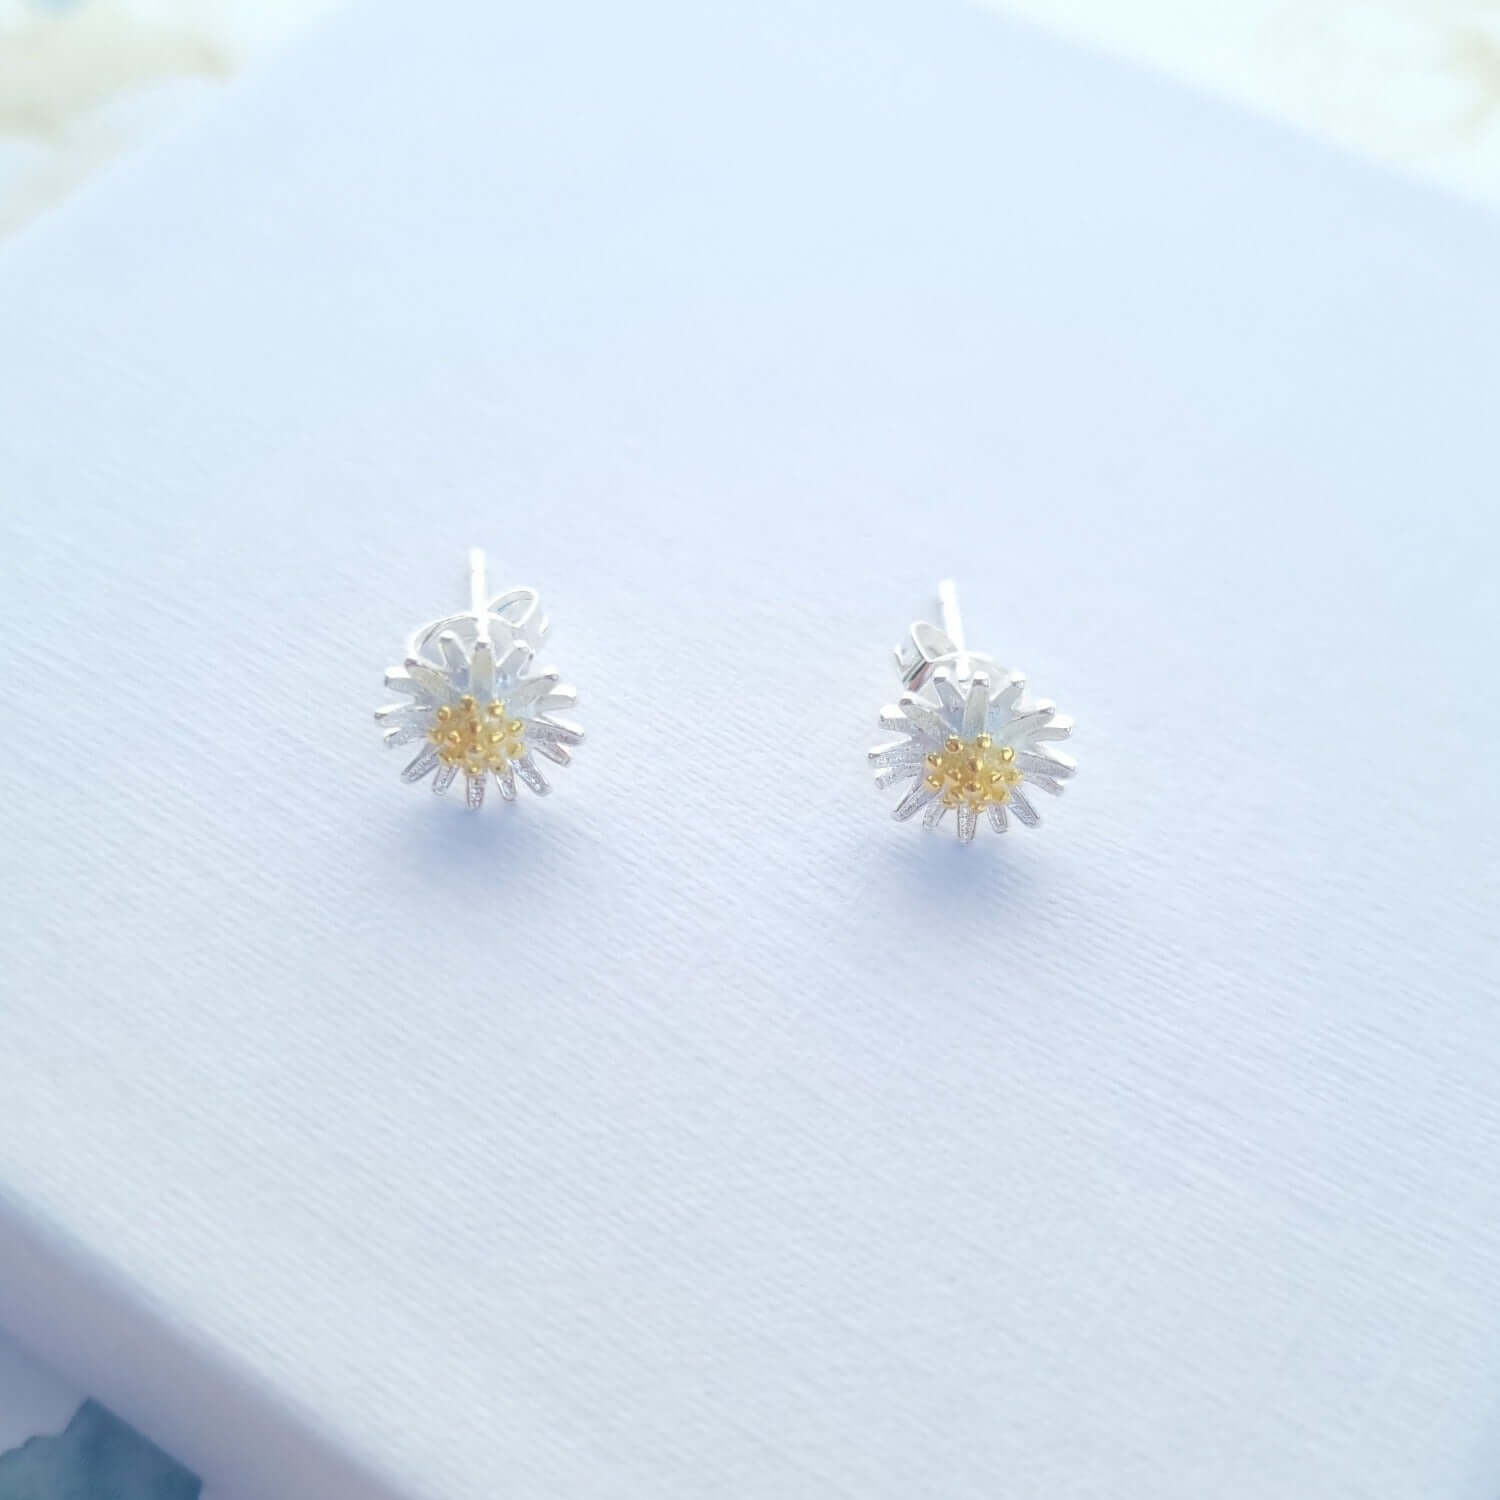 Sterling silver daisy earrings studs